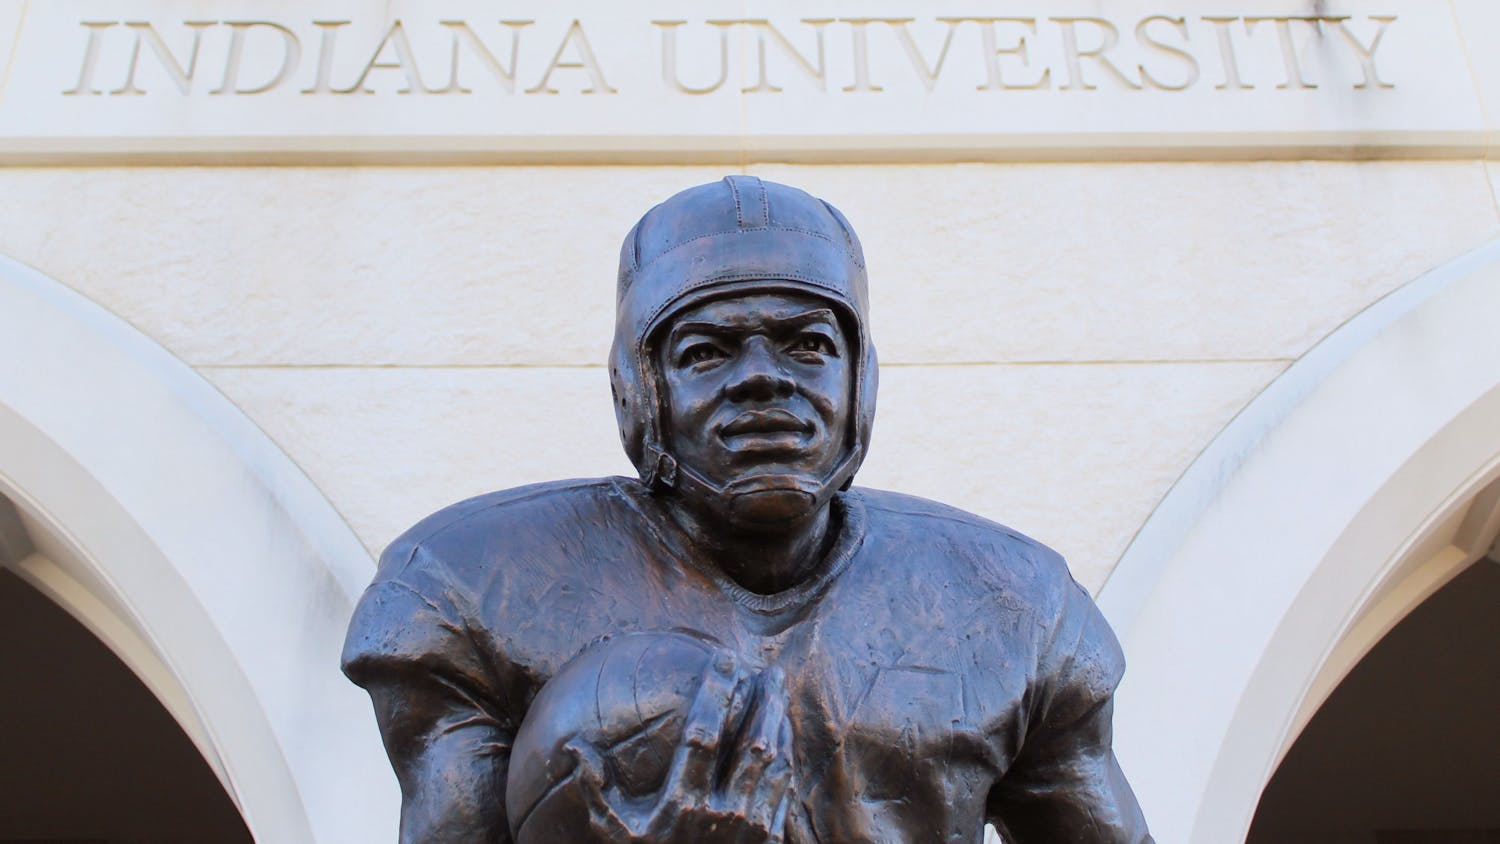 GALLERY: Statue of IU football legend George Taliaferro unveiled at Memorial Stadium